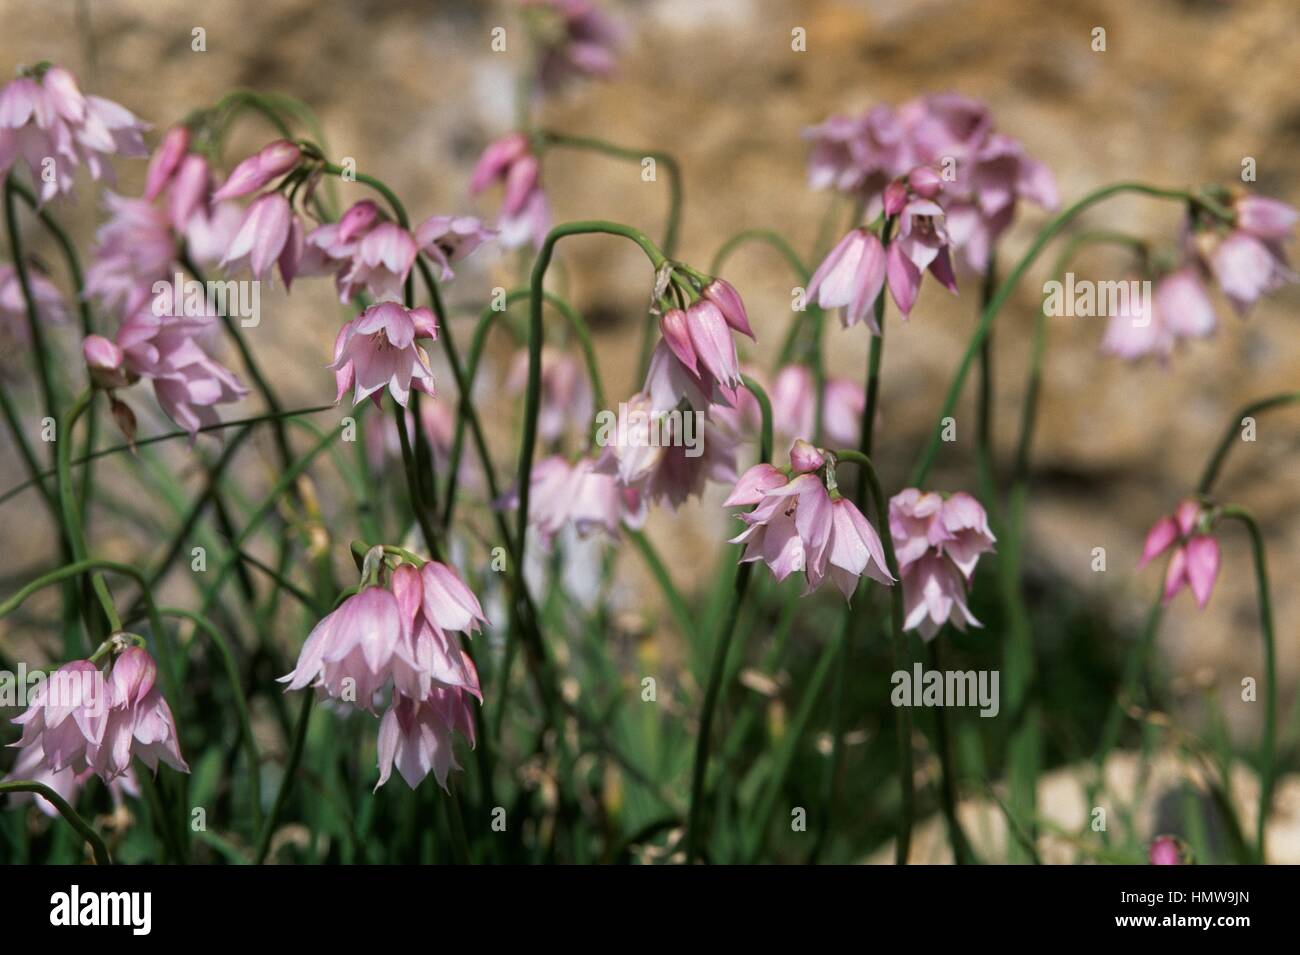 Ornamental Onion (Allium insubricum), Amaryllidaceae. Stock Photo